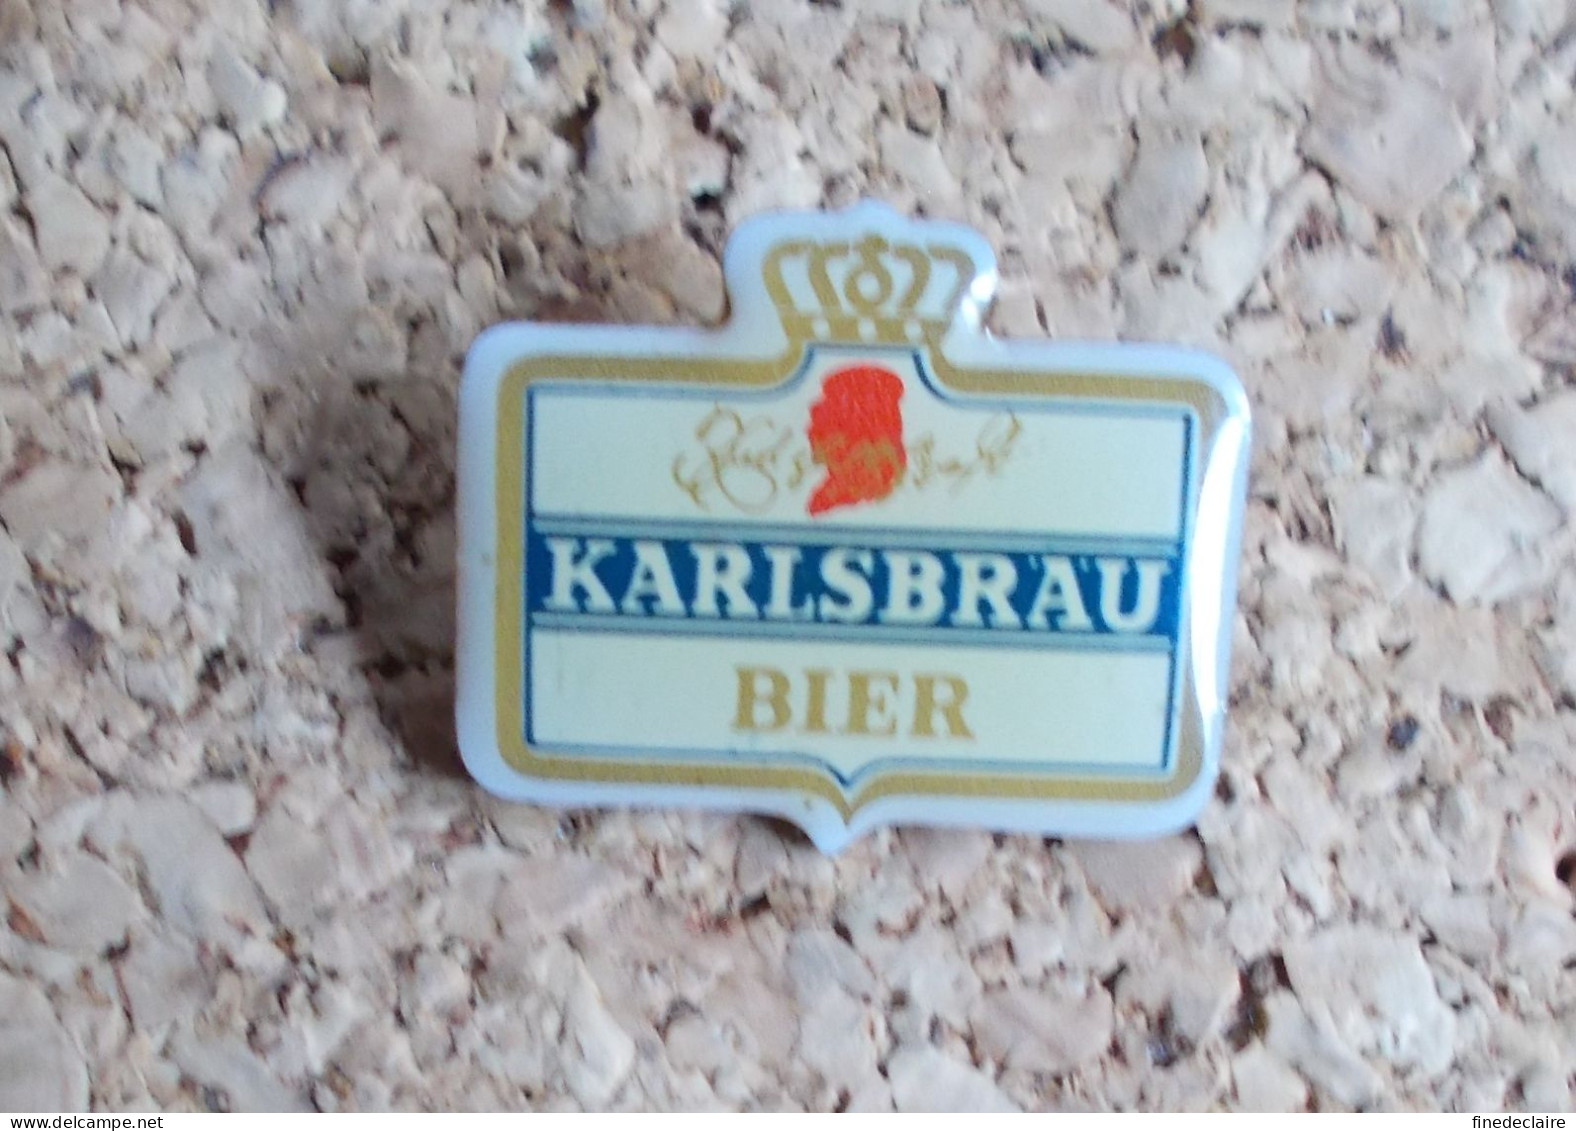 Pin's - Bière Bier Karlsbrau - Beer